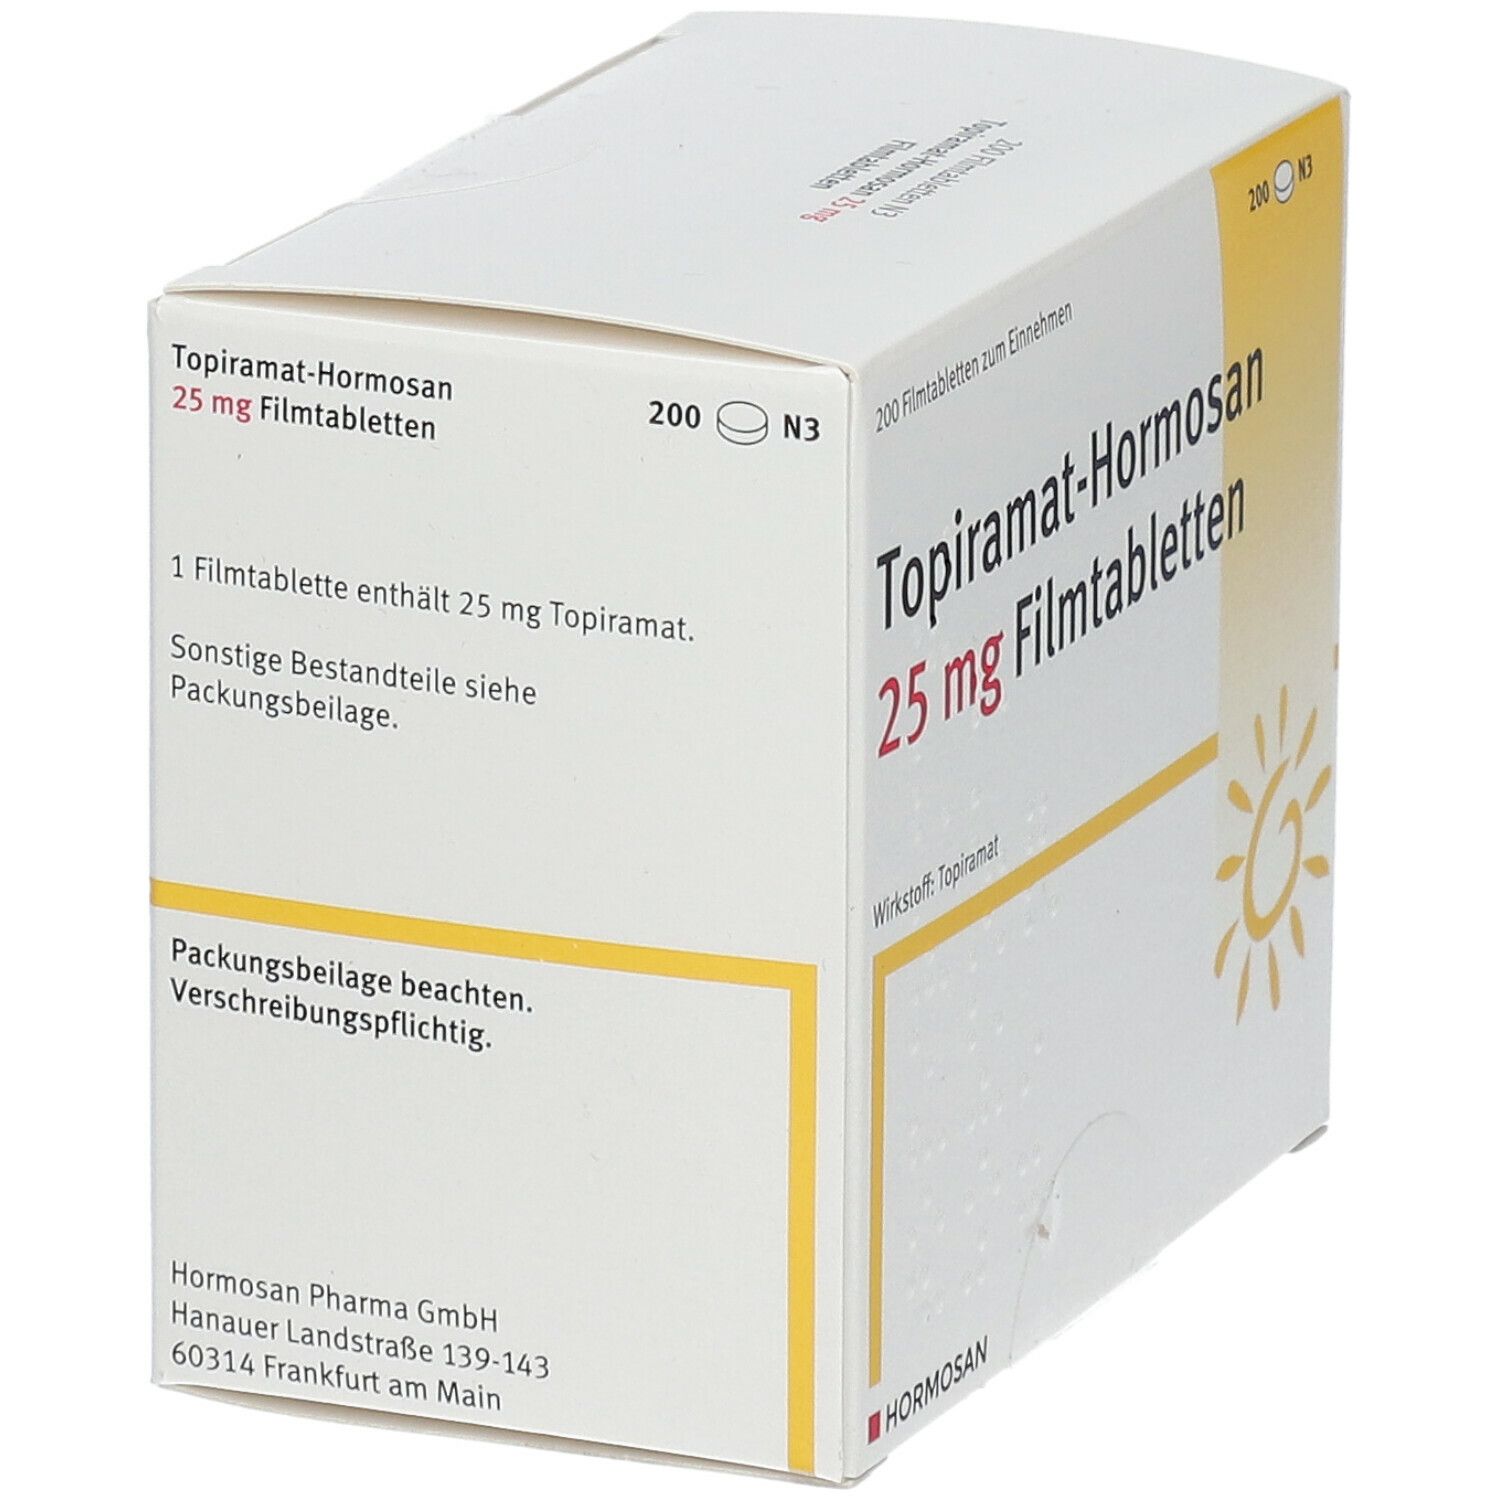 Topiramat-Hormosan 25 mg